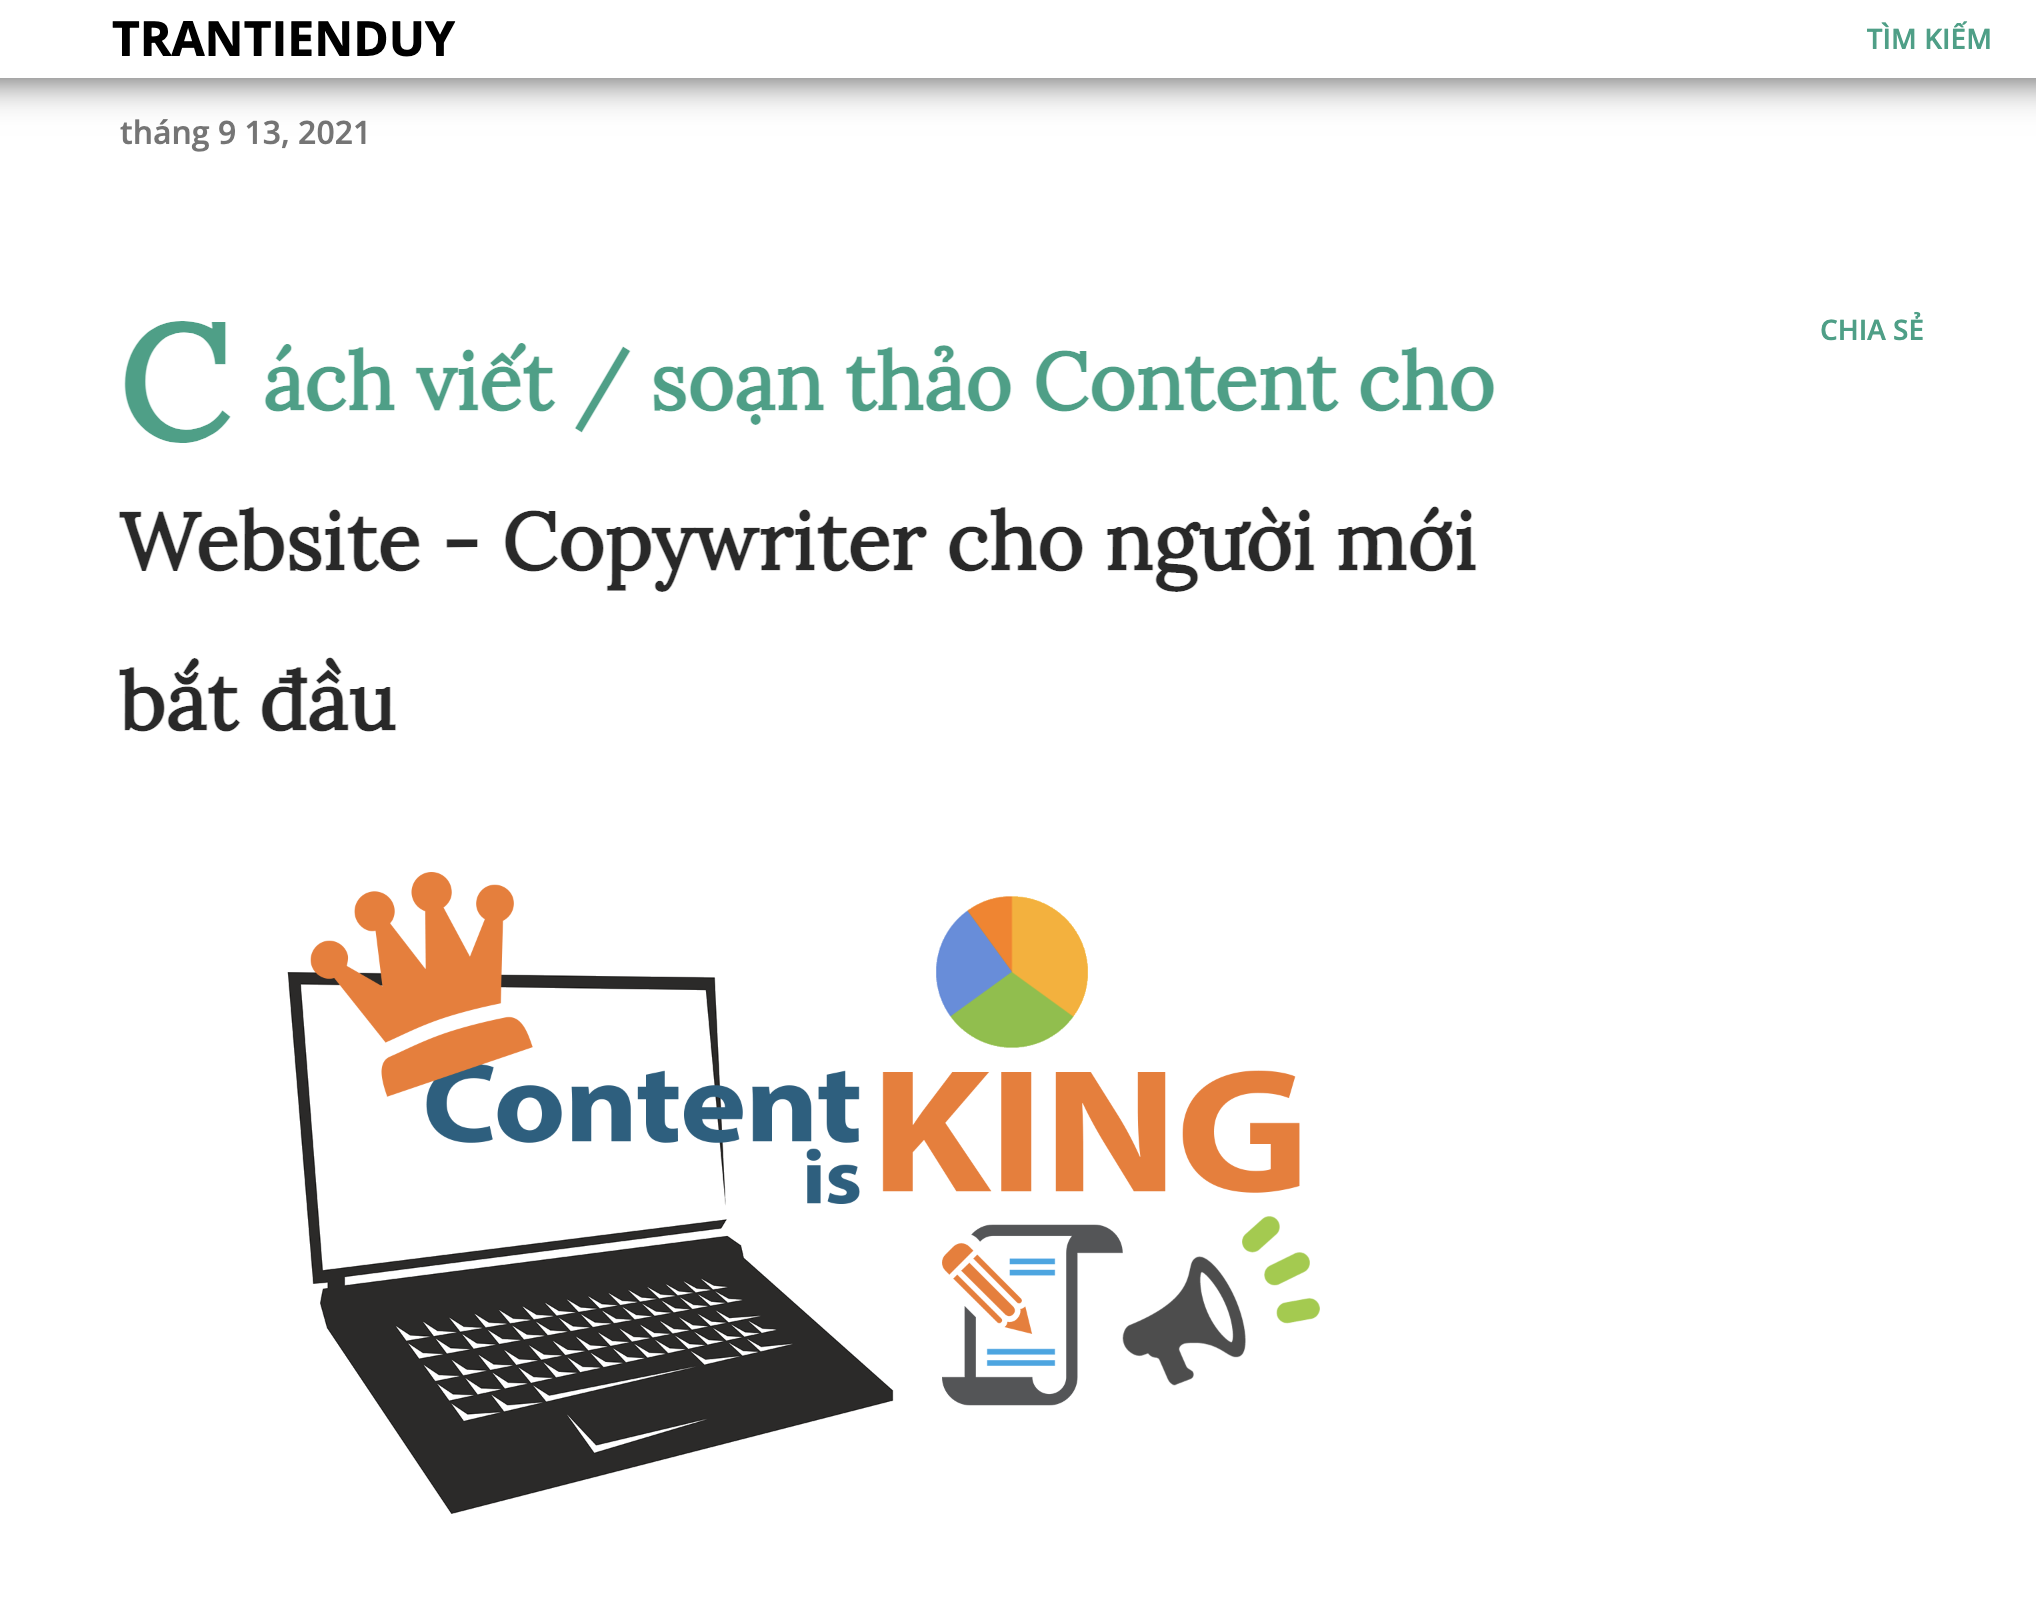 Cách viết / soạn thảo Content cho Website - Copywriter cho người mới bắt đầu